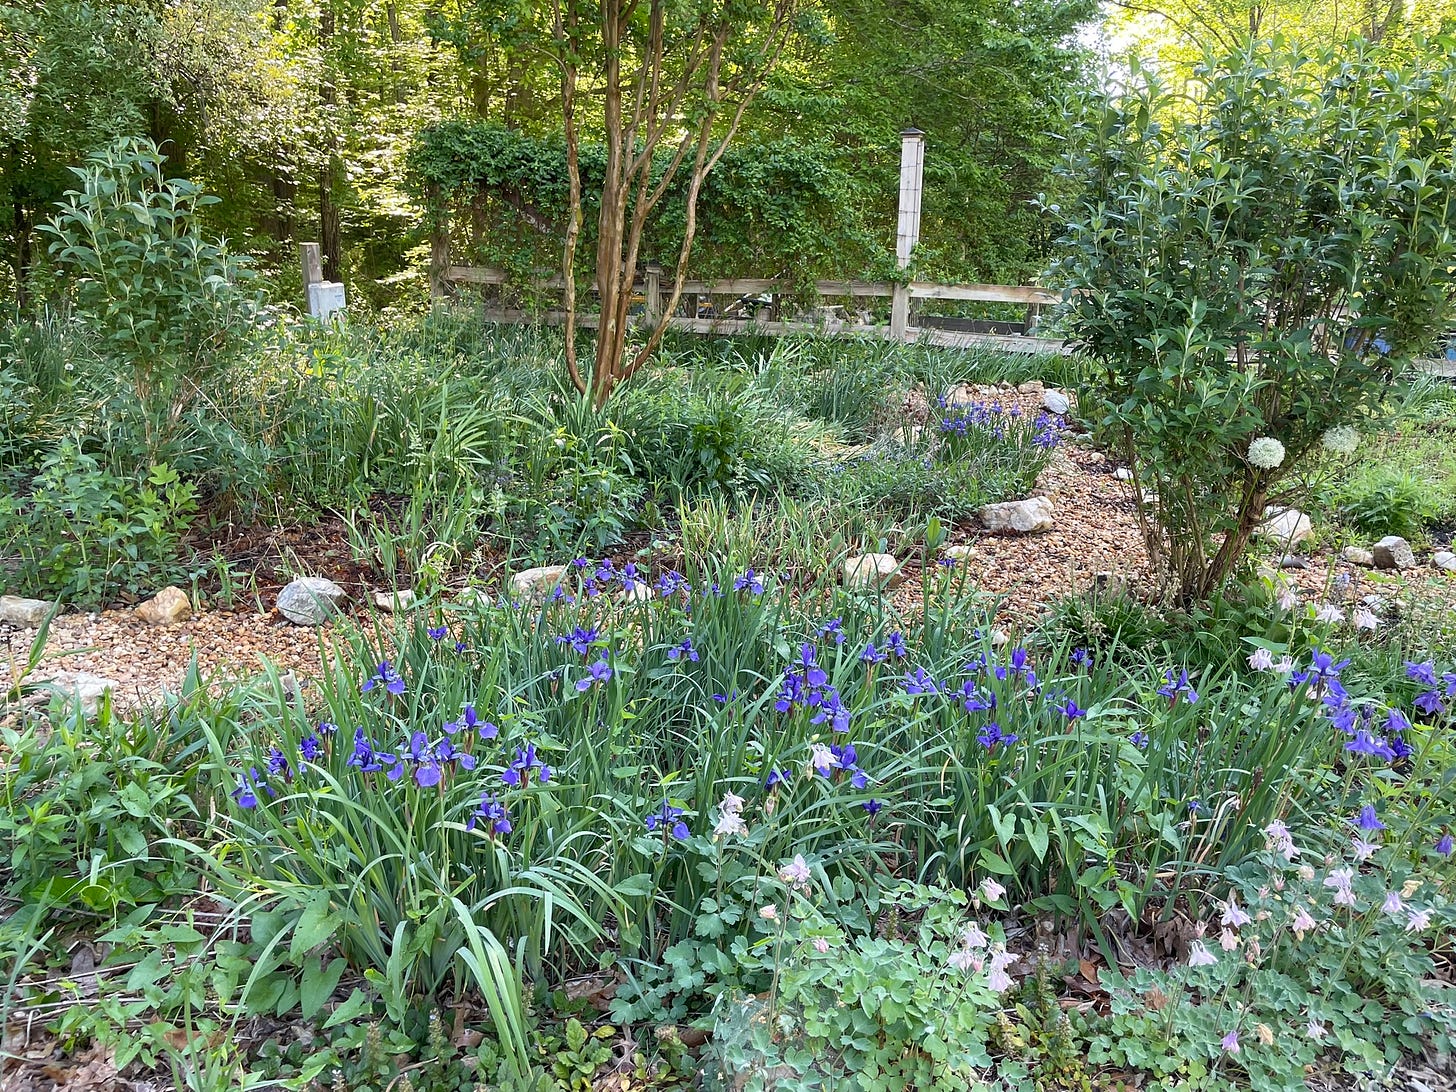 Garden with irises in bloom